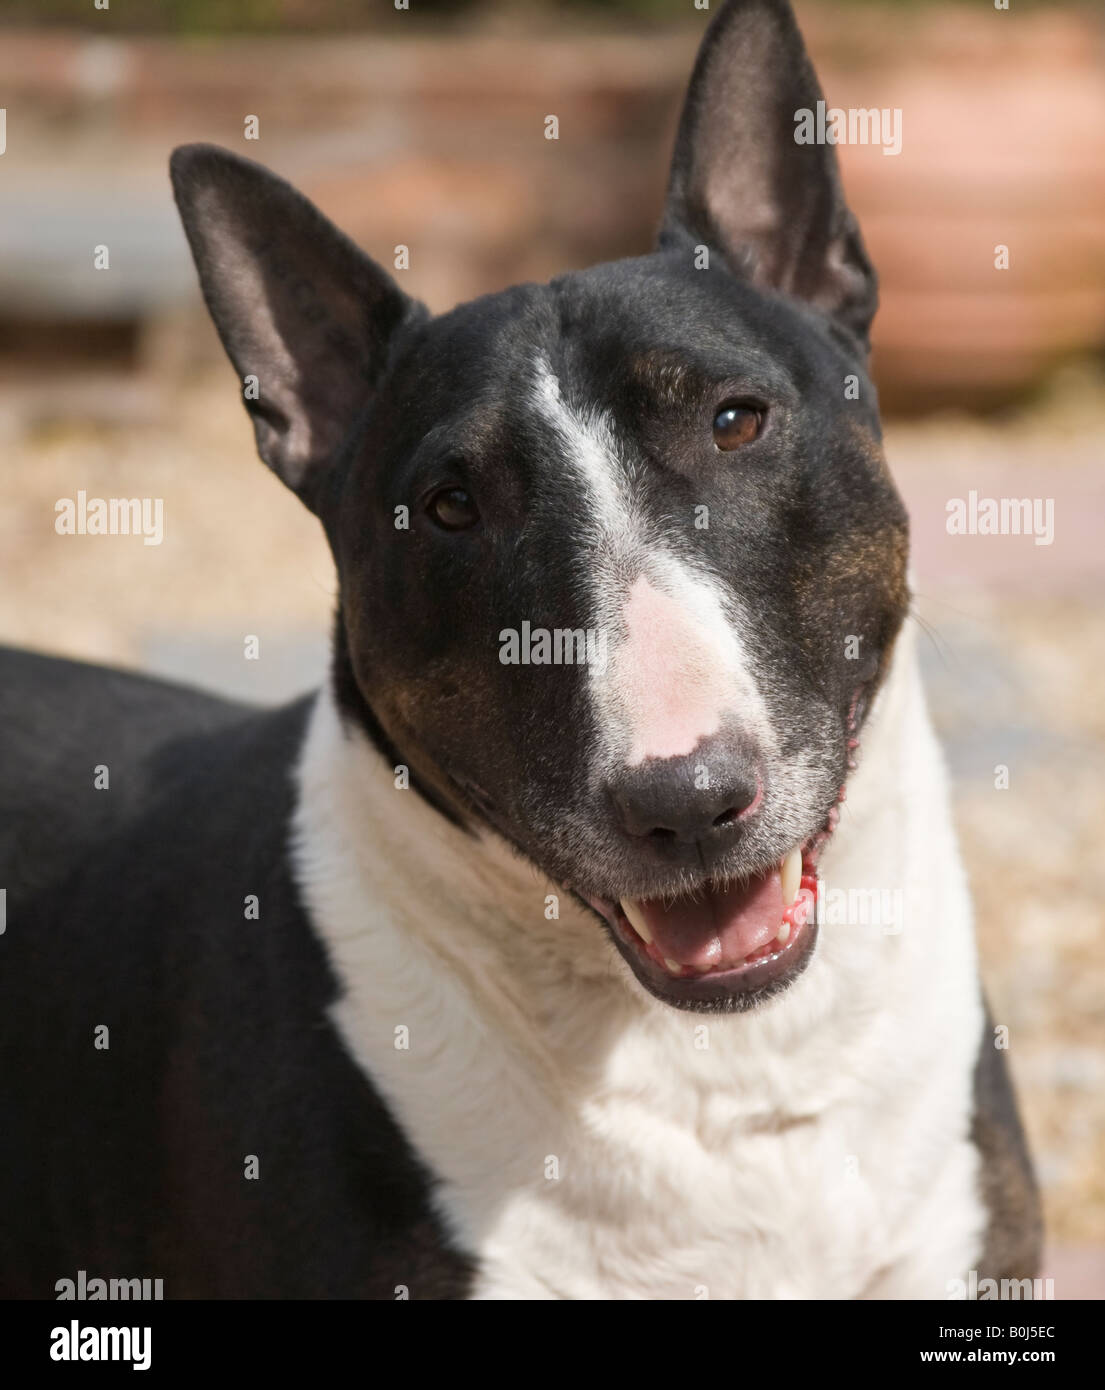 Porträtfoto von schwarzen und weißen englischen Bullterrier ^ Hund in einem Garten mit leicht geöffnetem Mund. Stockfoto